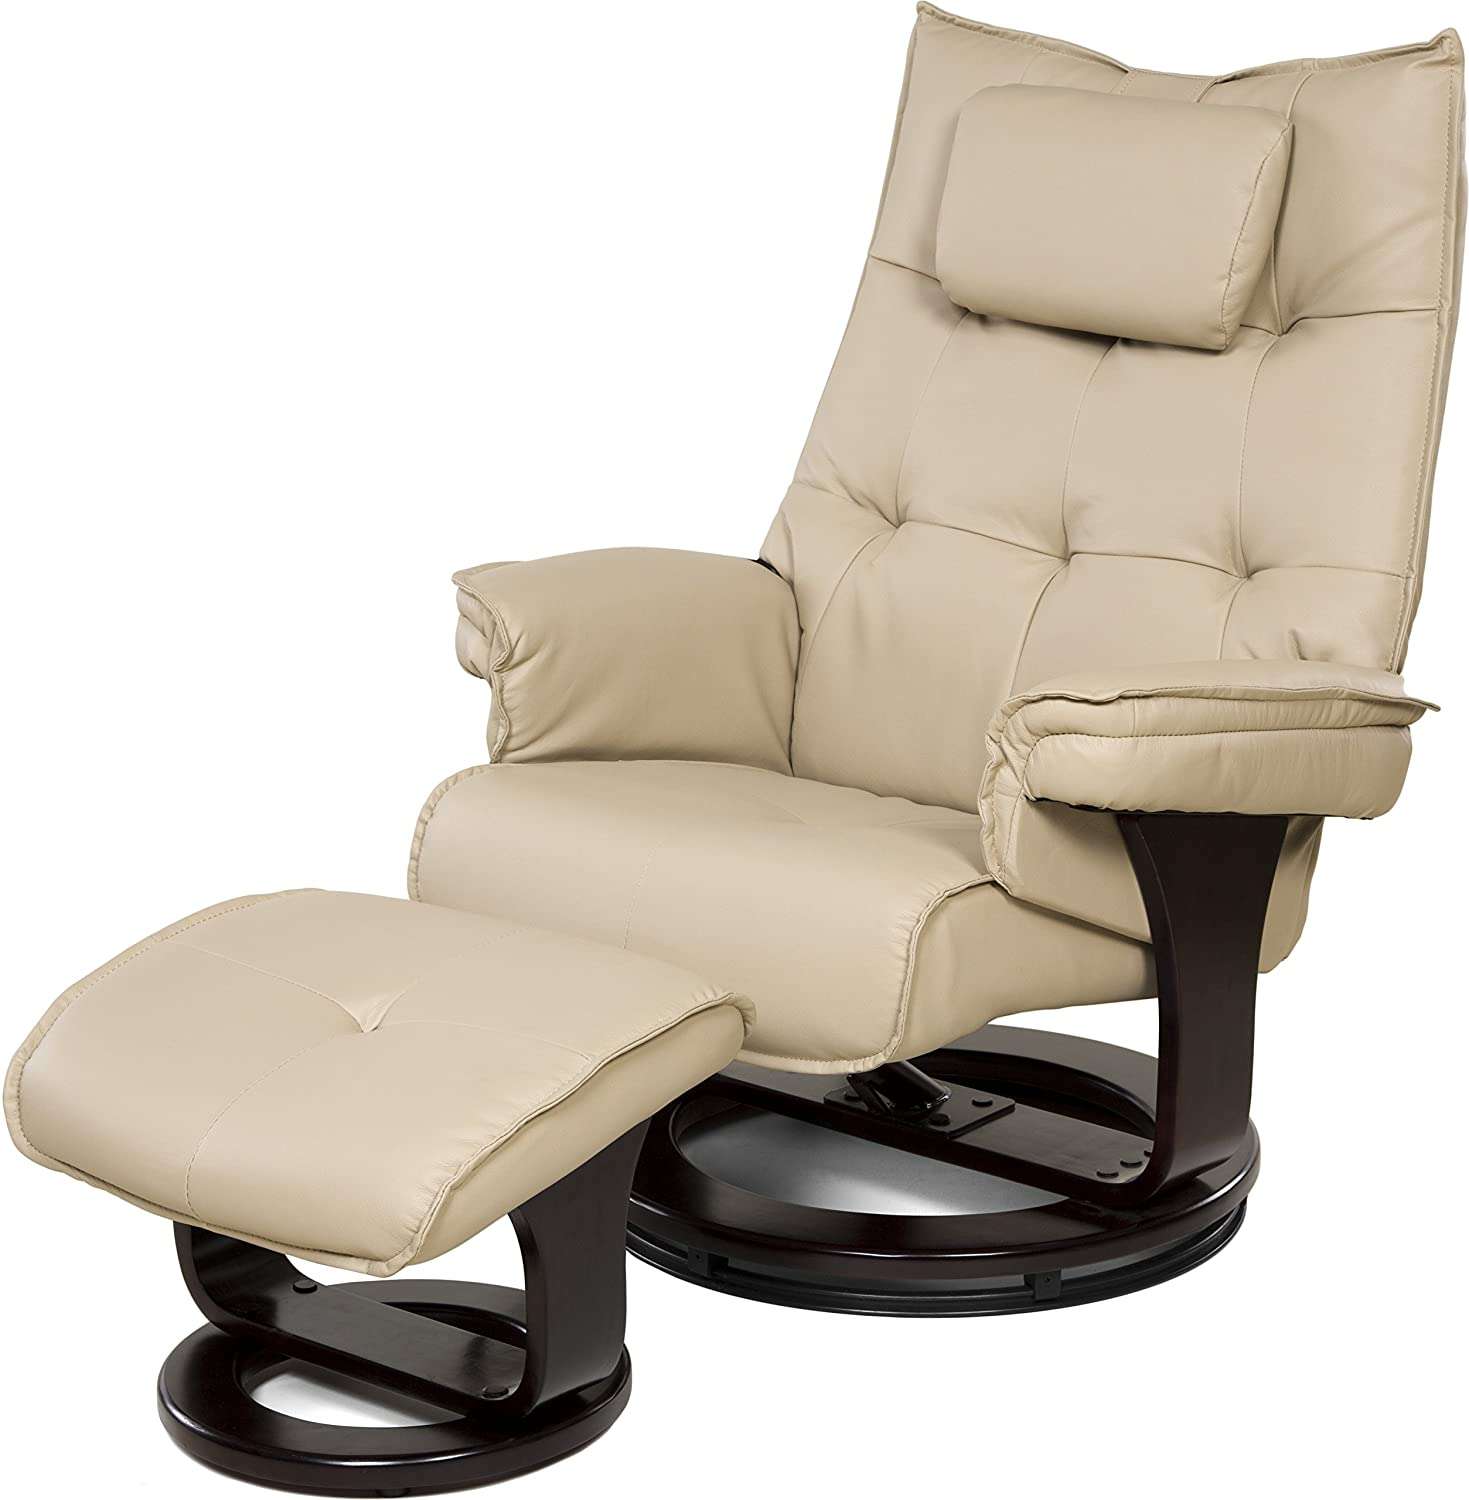 relaxzen 8 motor massage recliner with lumbar heat and ottoman